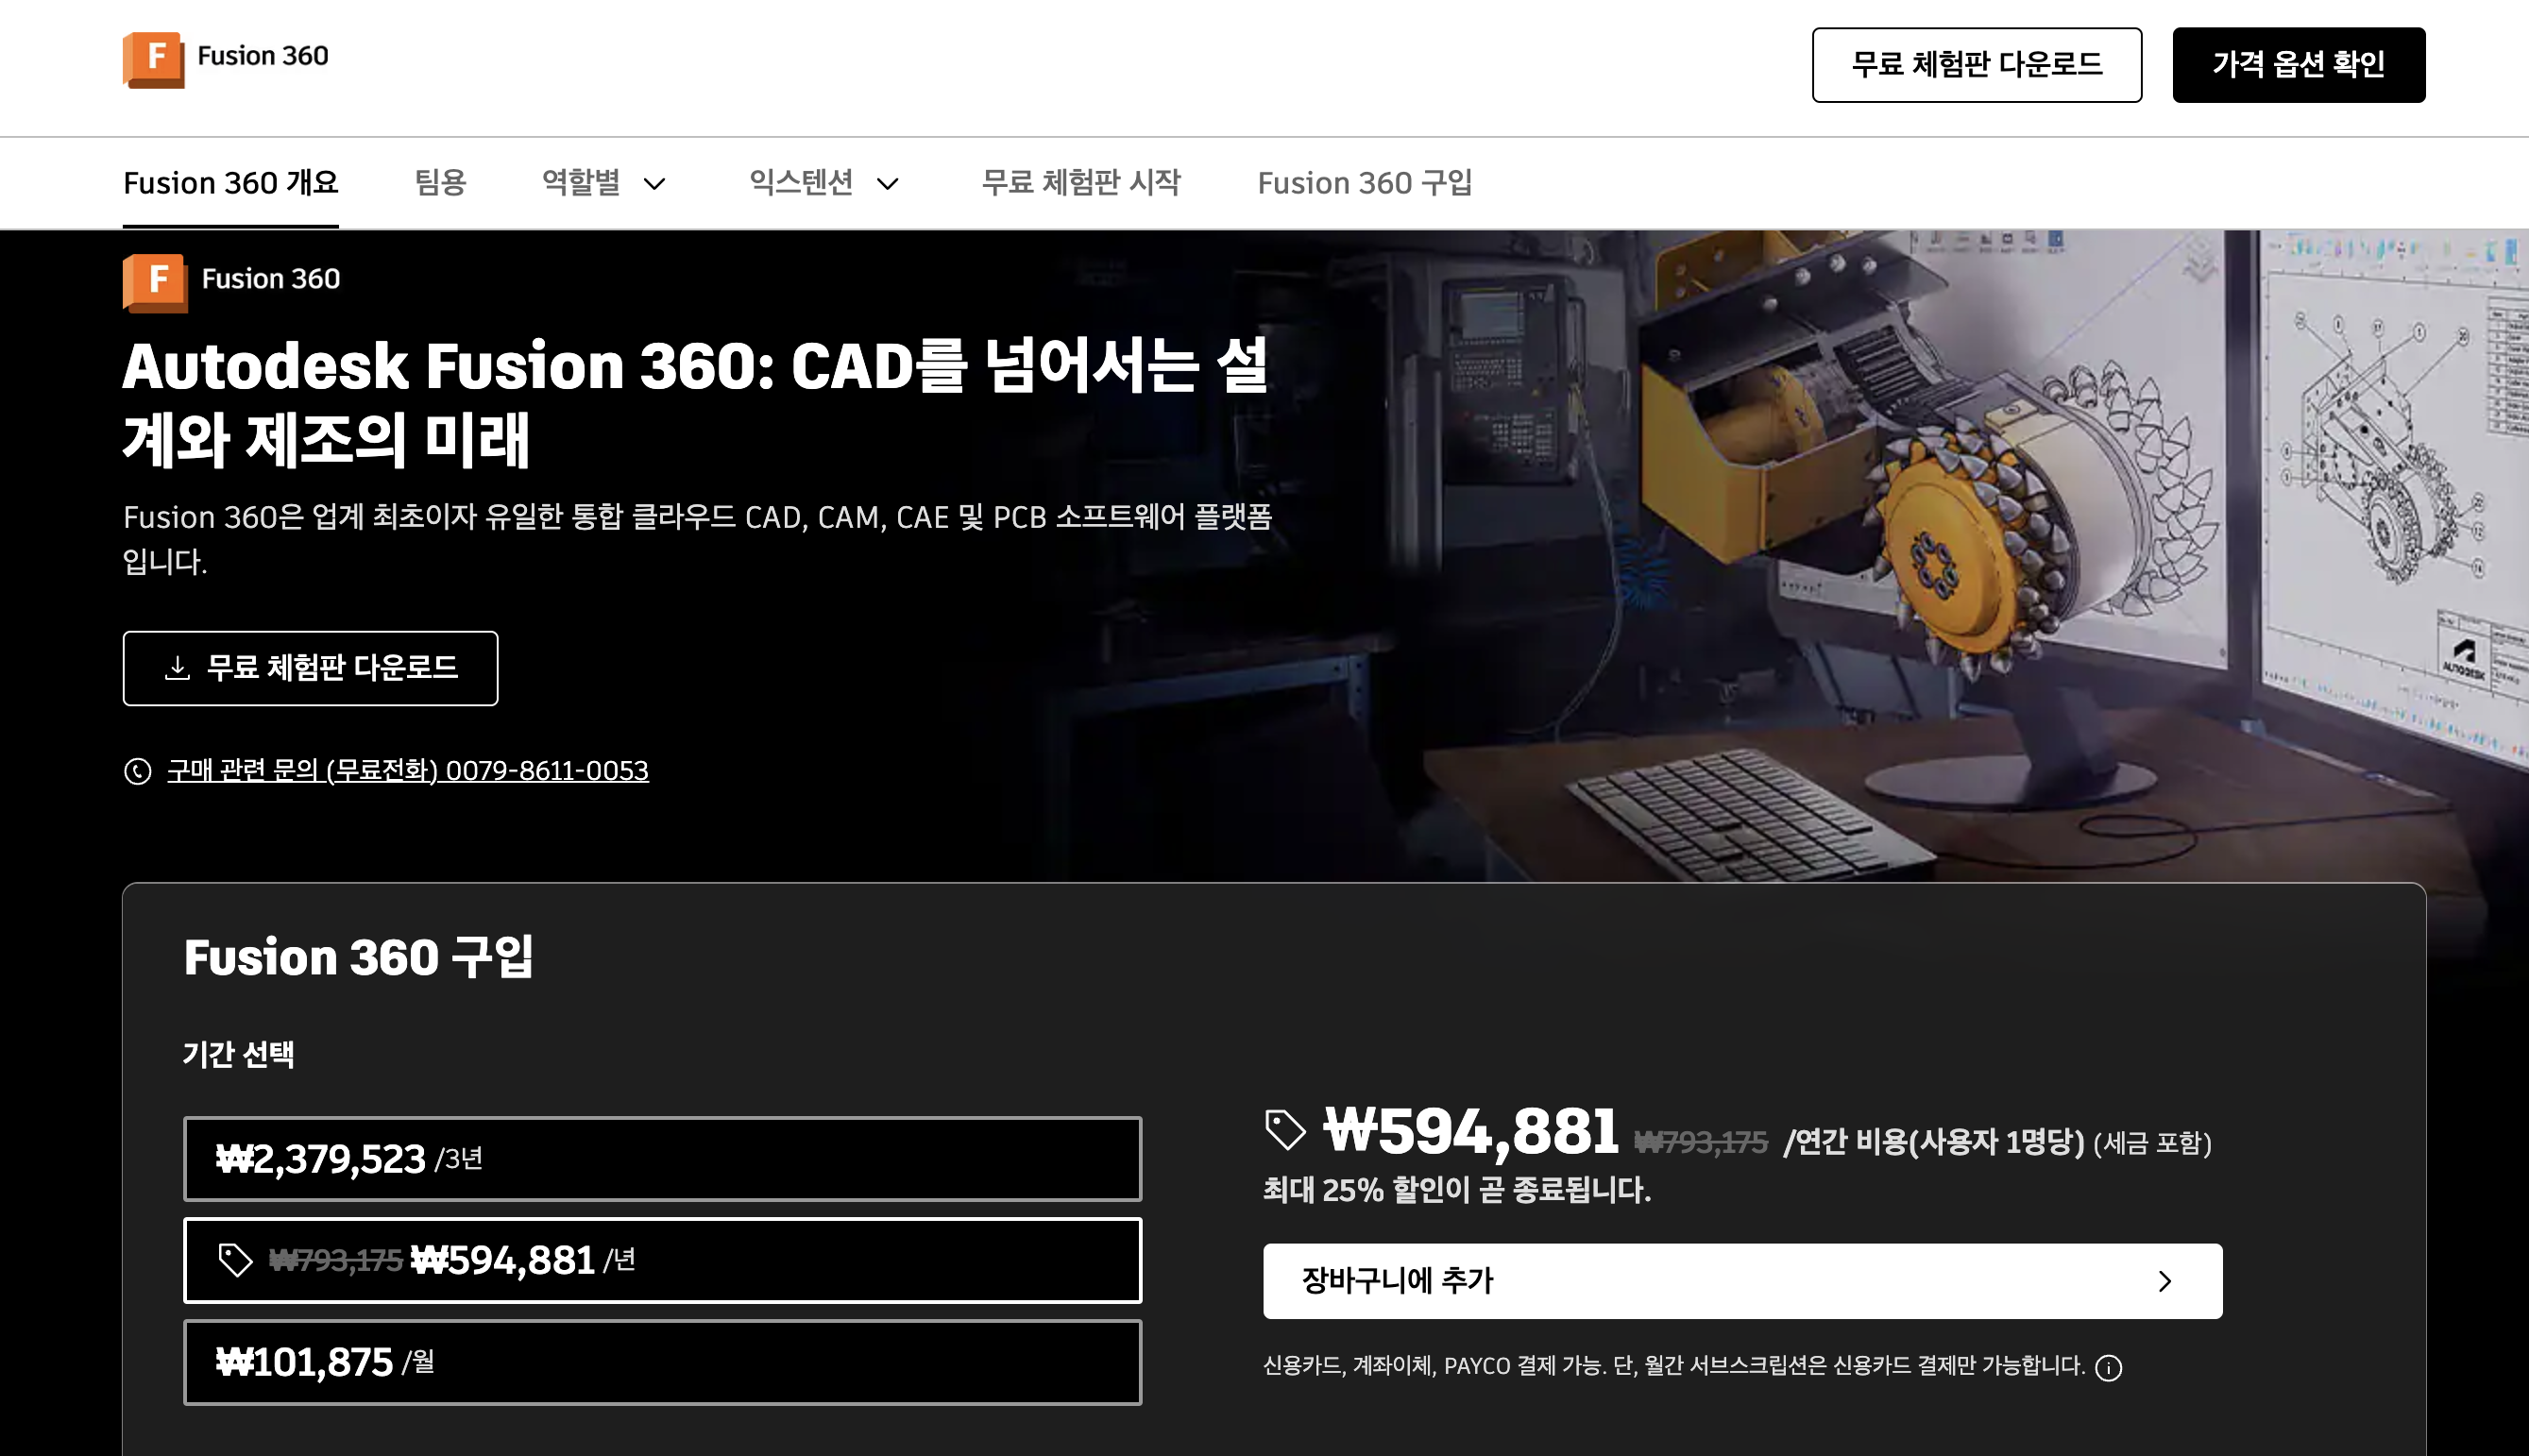 한국 공식 홈페이지는 1달 체험판만 있습니다.